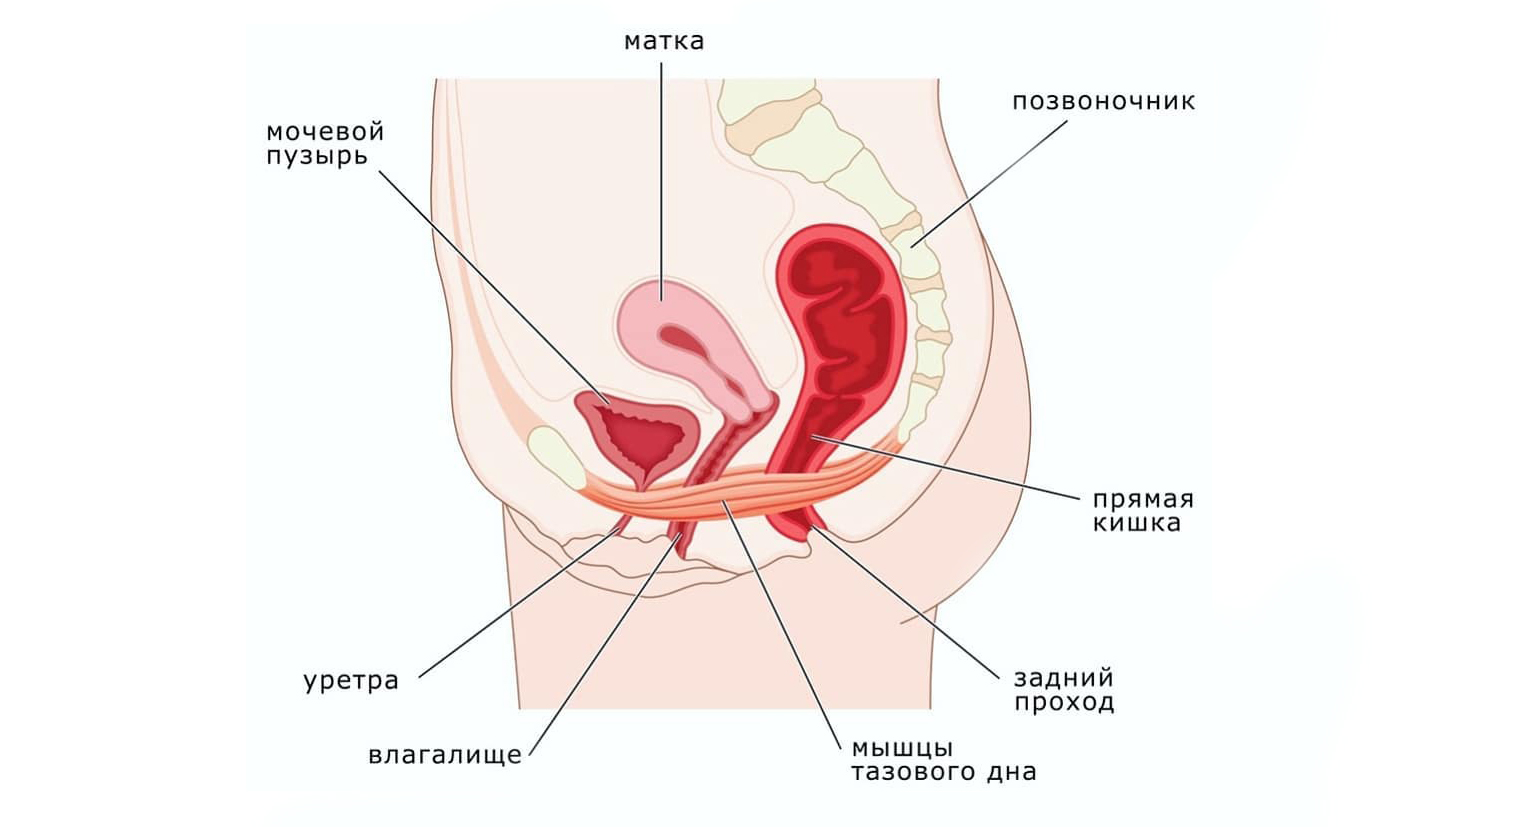 Мышцы тазового дна у женщин: анатомия, определение, тренировка - kegel-pf.ru